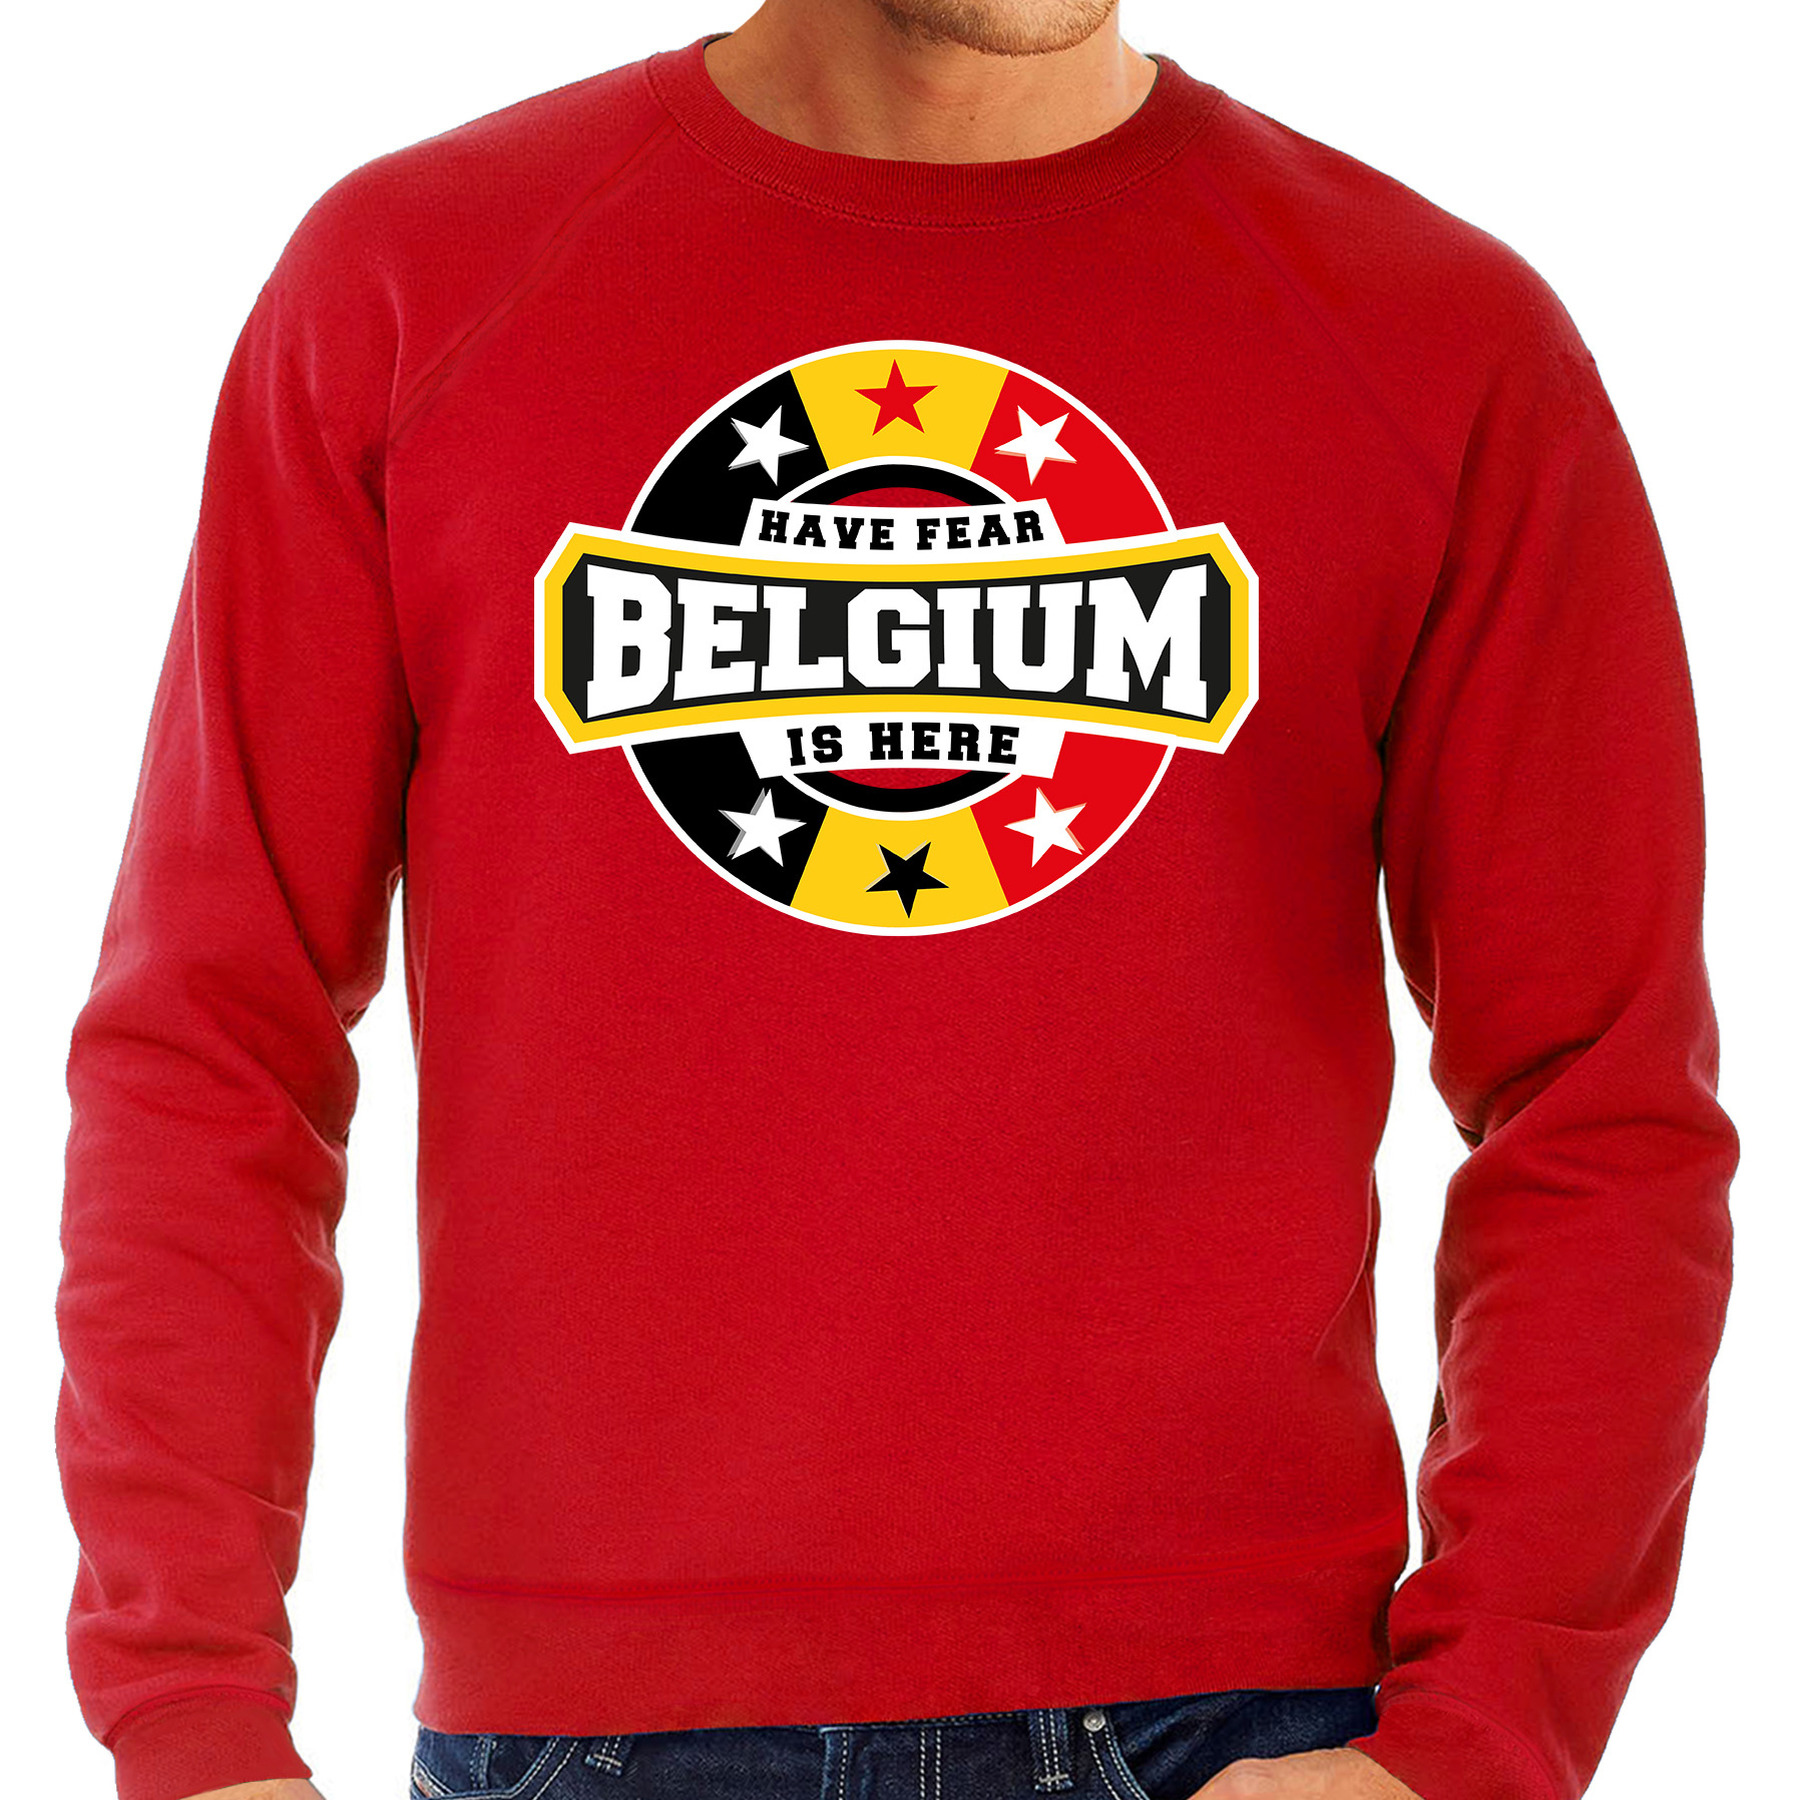 Have fear Belgium-Belgie is here supporter trui-kleding met sterren embleem rood voor heren